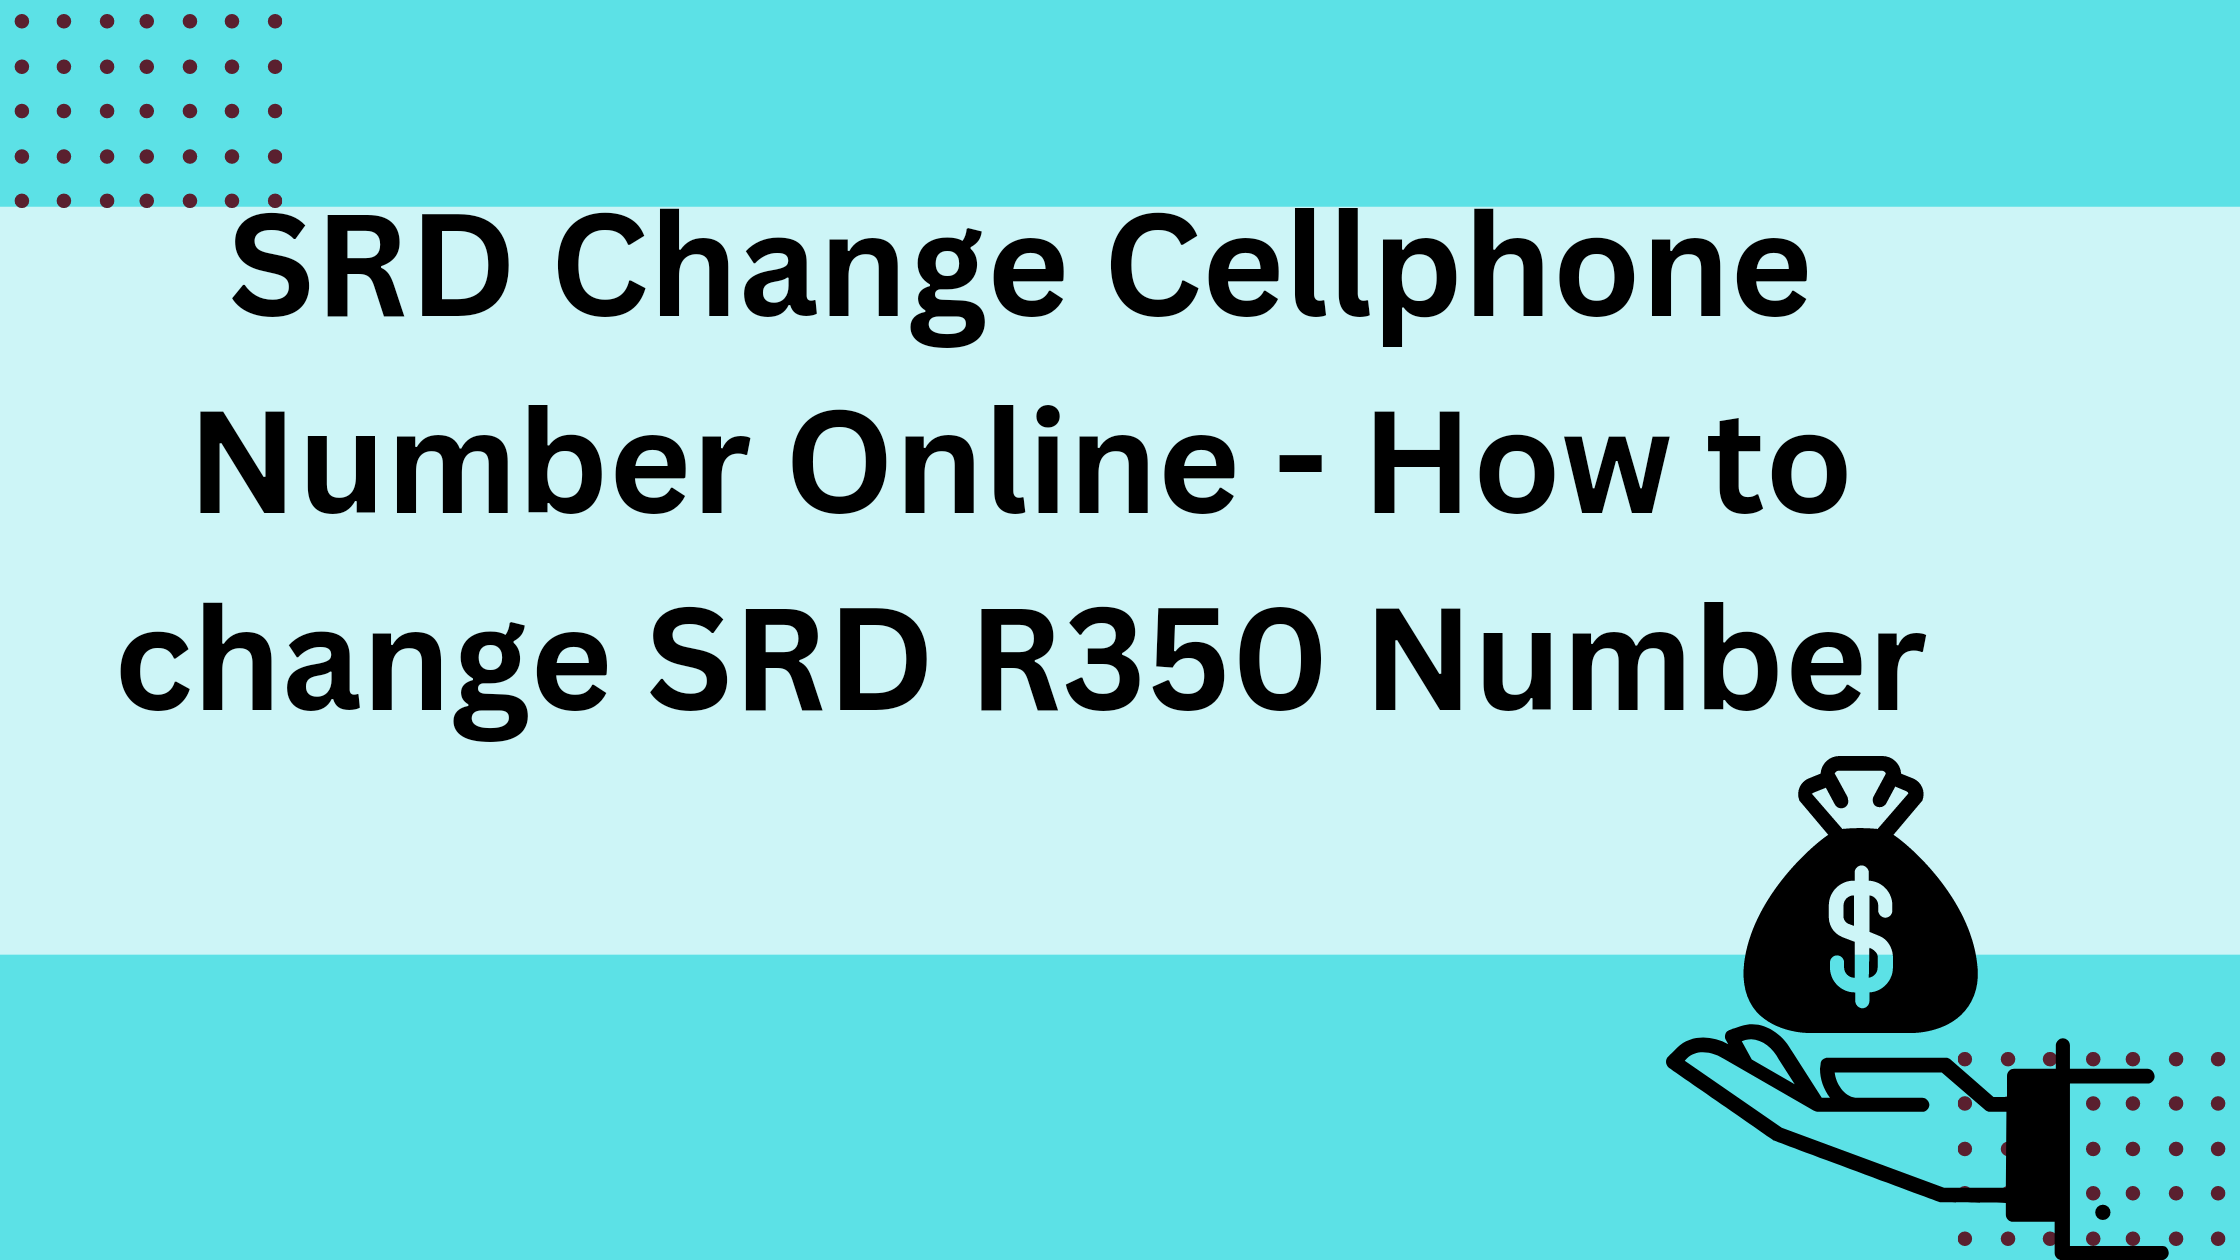 SRD Change Cellphone Number Online - How to change SRD R350 Number